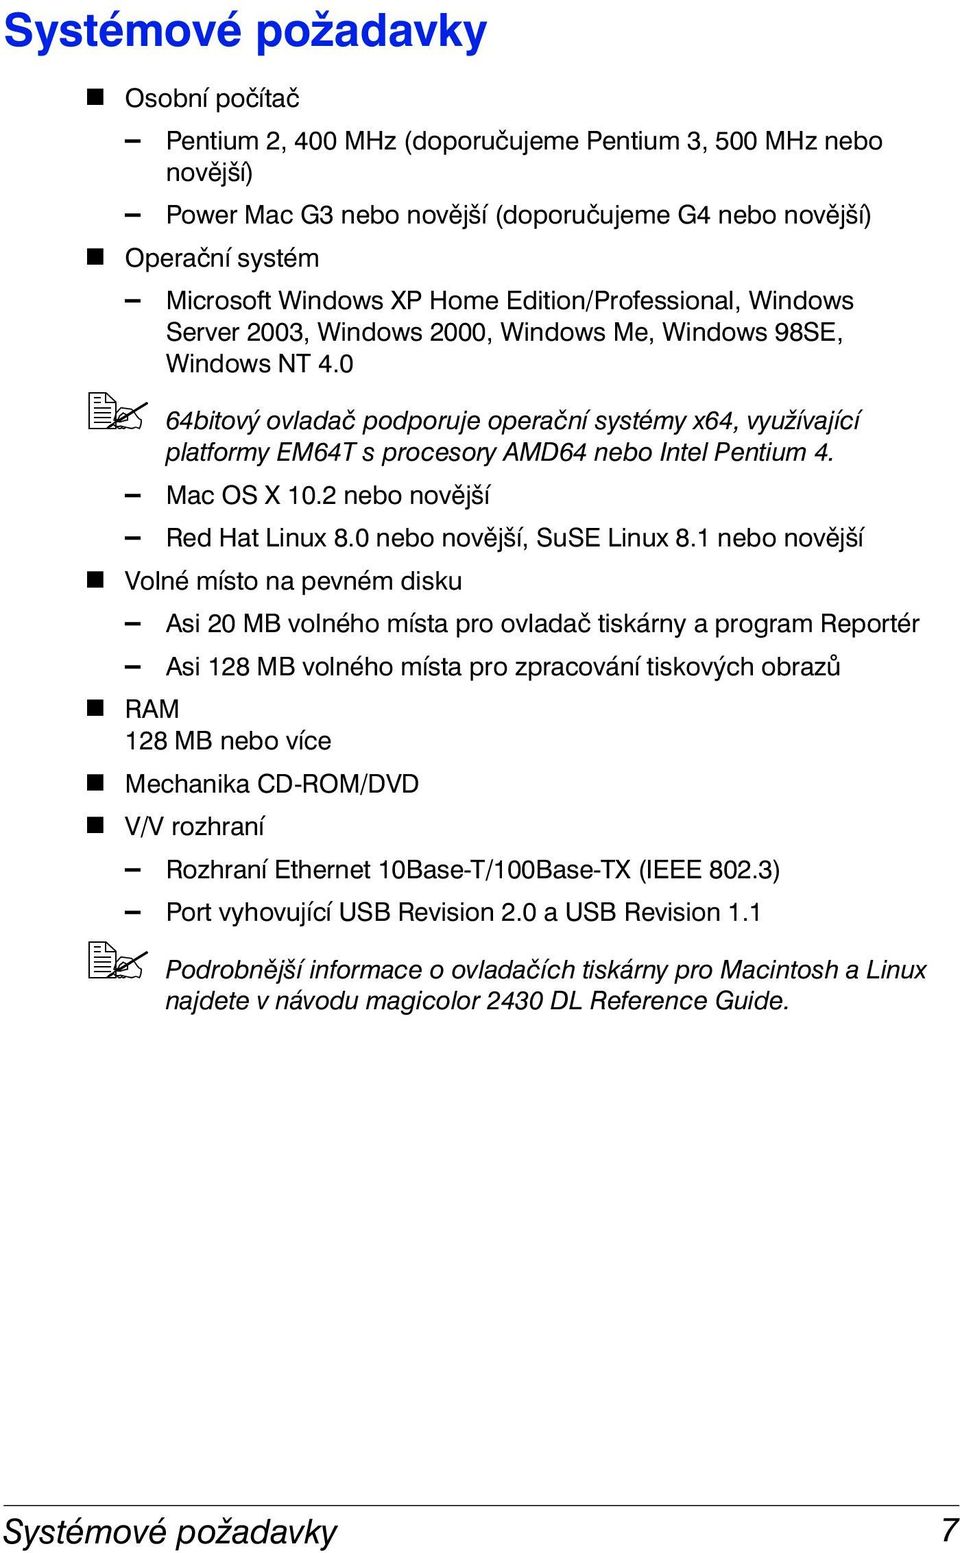 0 "# 64bitový ovladač podporuje operační systémy x64, využívající platformy EM64T s procesory AMD64 nebo Intel Pentium 4. Mac OS X 10.2 nebo novější Red Hat Linux 8.0 nebo novější, SuSE Linux 8.